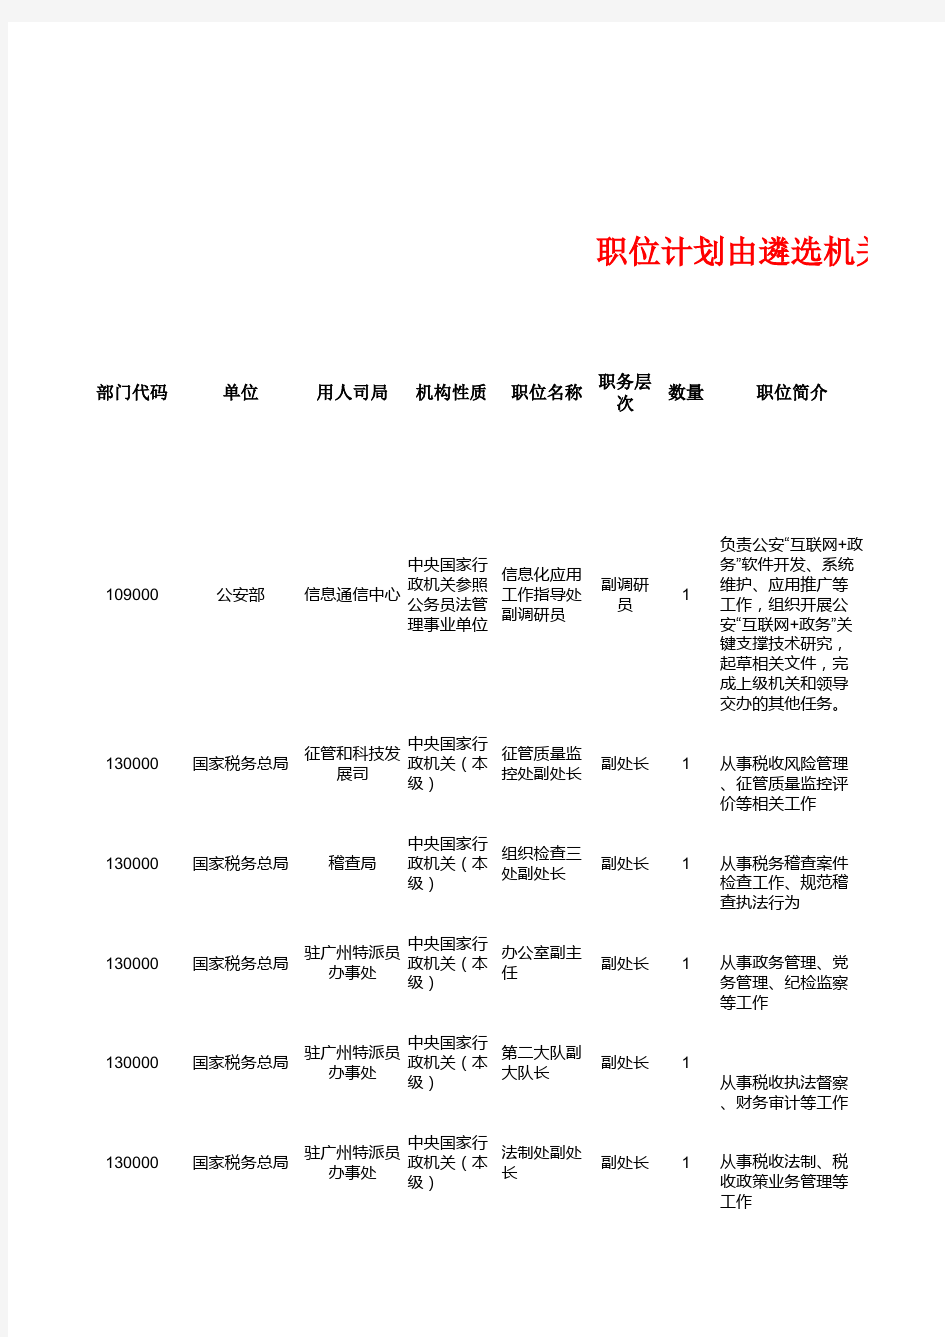 2019年度中央机关公开遴选公务员职位计划表